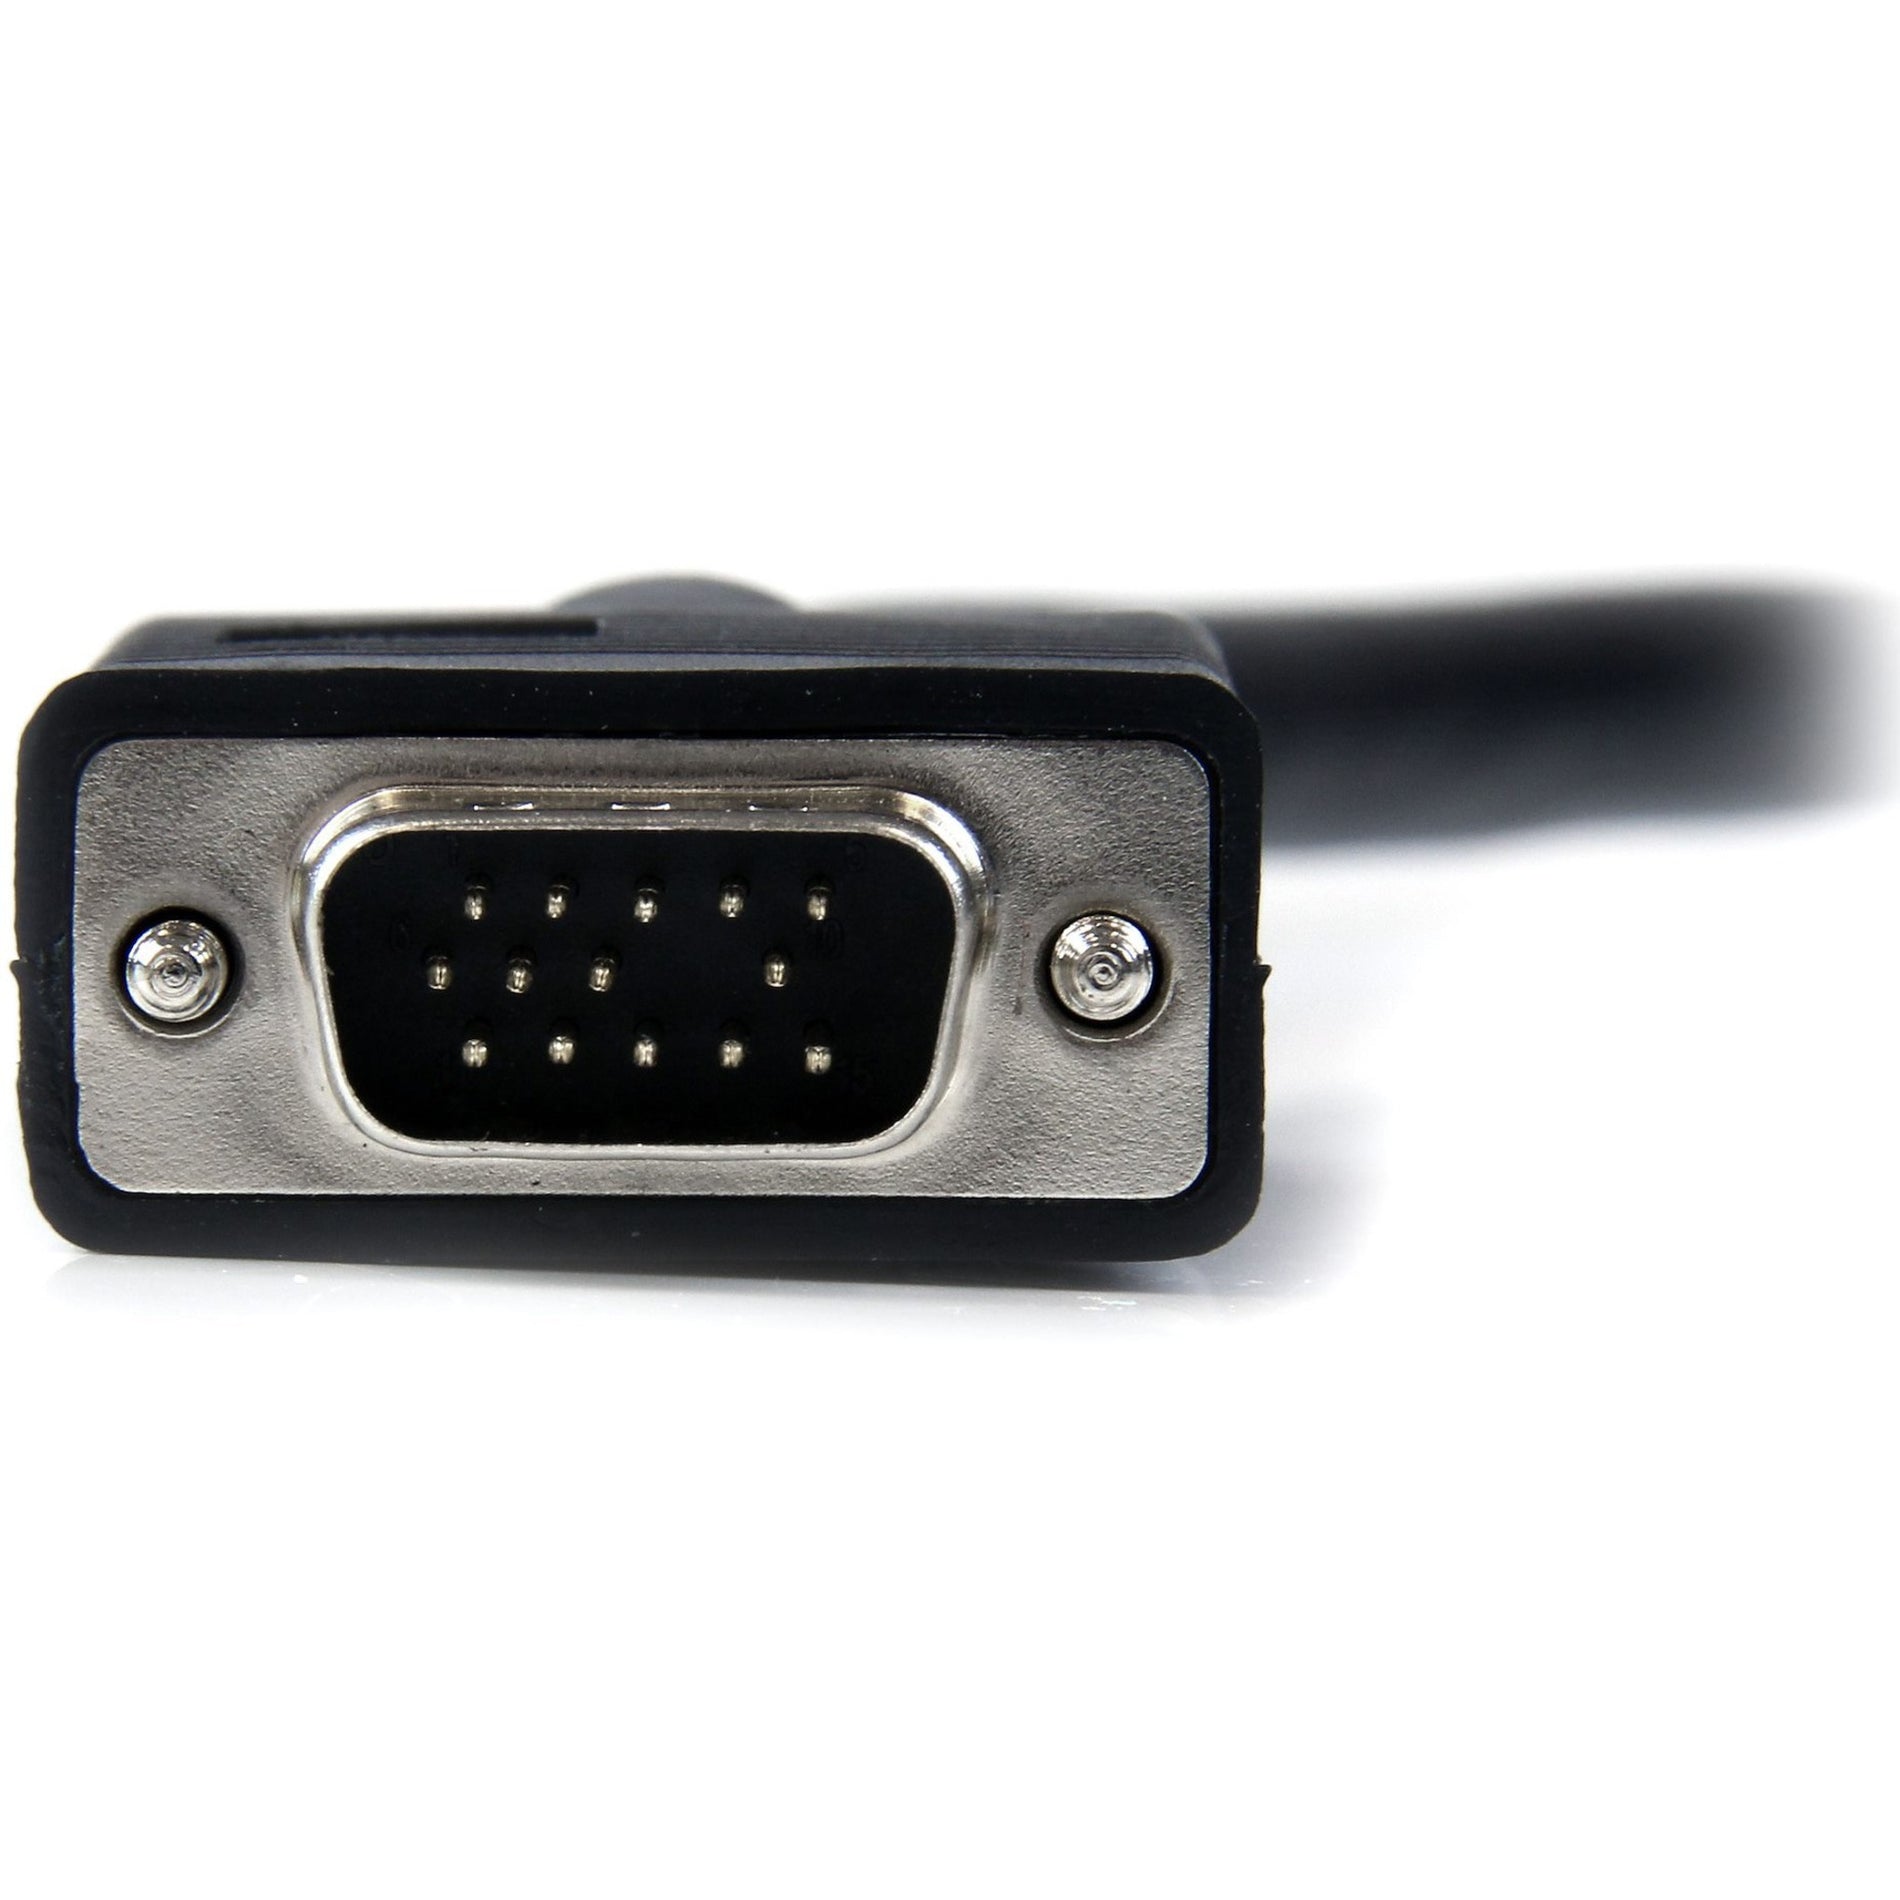 Marca: StarTech.com   Cable de monitor VGA de alta resolución con coaxial de 10 pies HD15 M/M moldeado protección EMI 1920 x 1200 negro